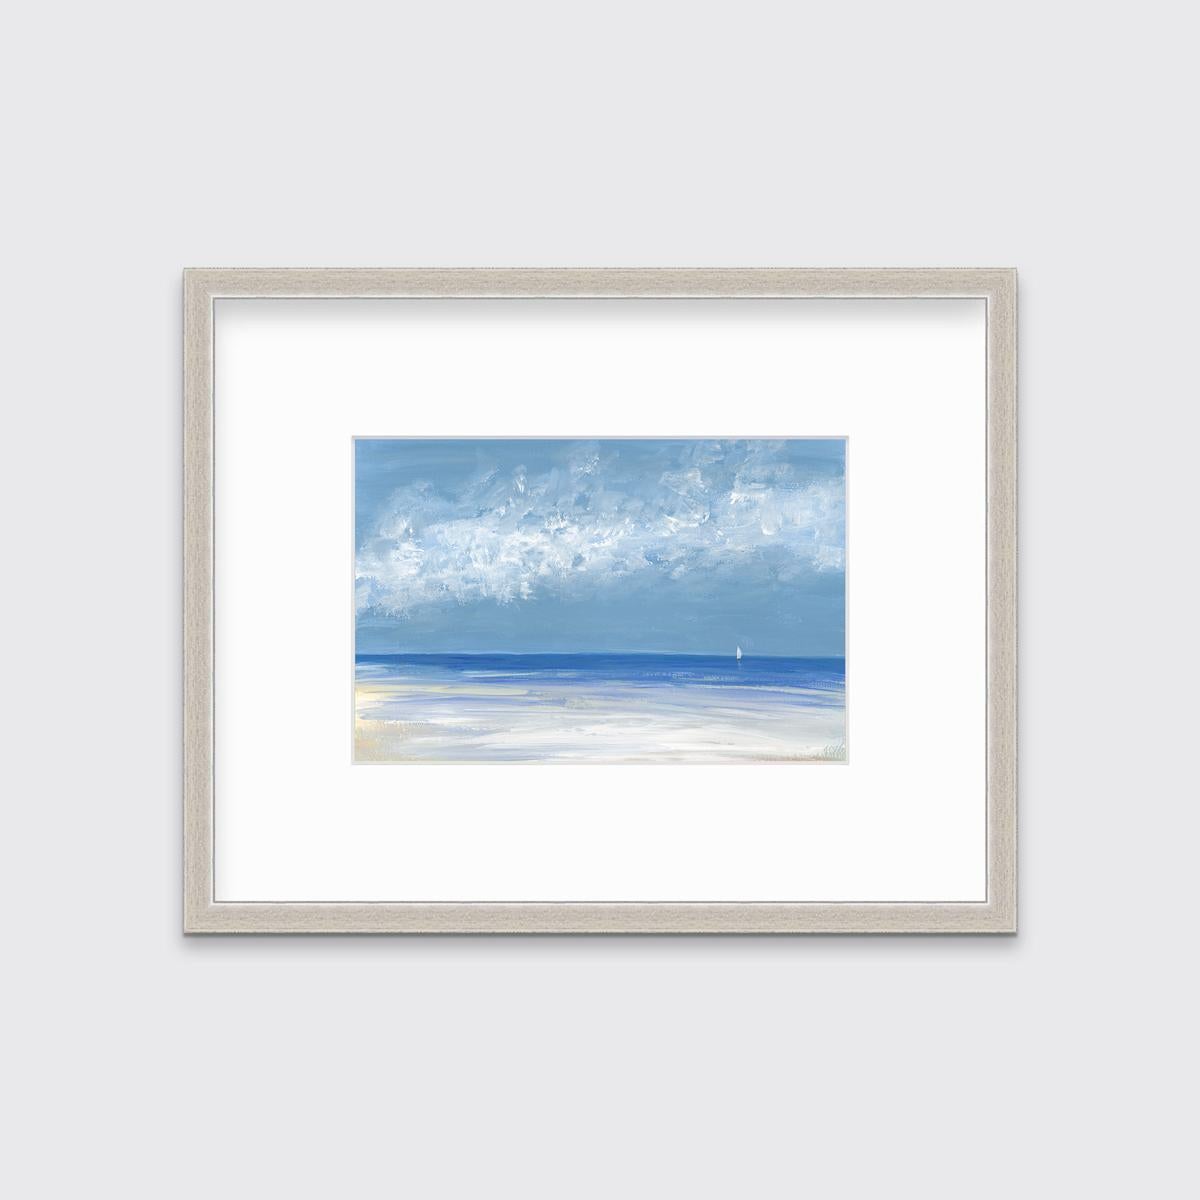 Ce paysage marin contemporain imprimé en édition limitée par A.I.C. Aldo représente une scène côtière avec un ciel bleu clair, des nuages abstraits et un petit voilier naviguant à l'horizon. 

Ce tirage en édition limitée est édité à 195